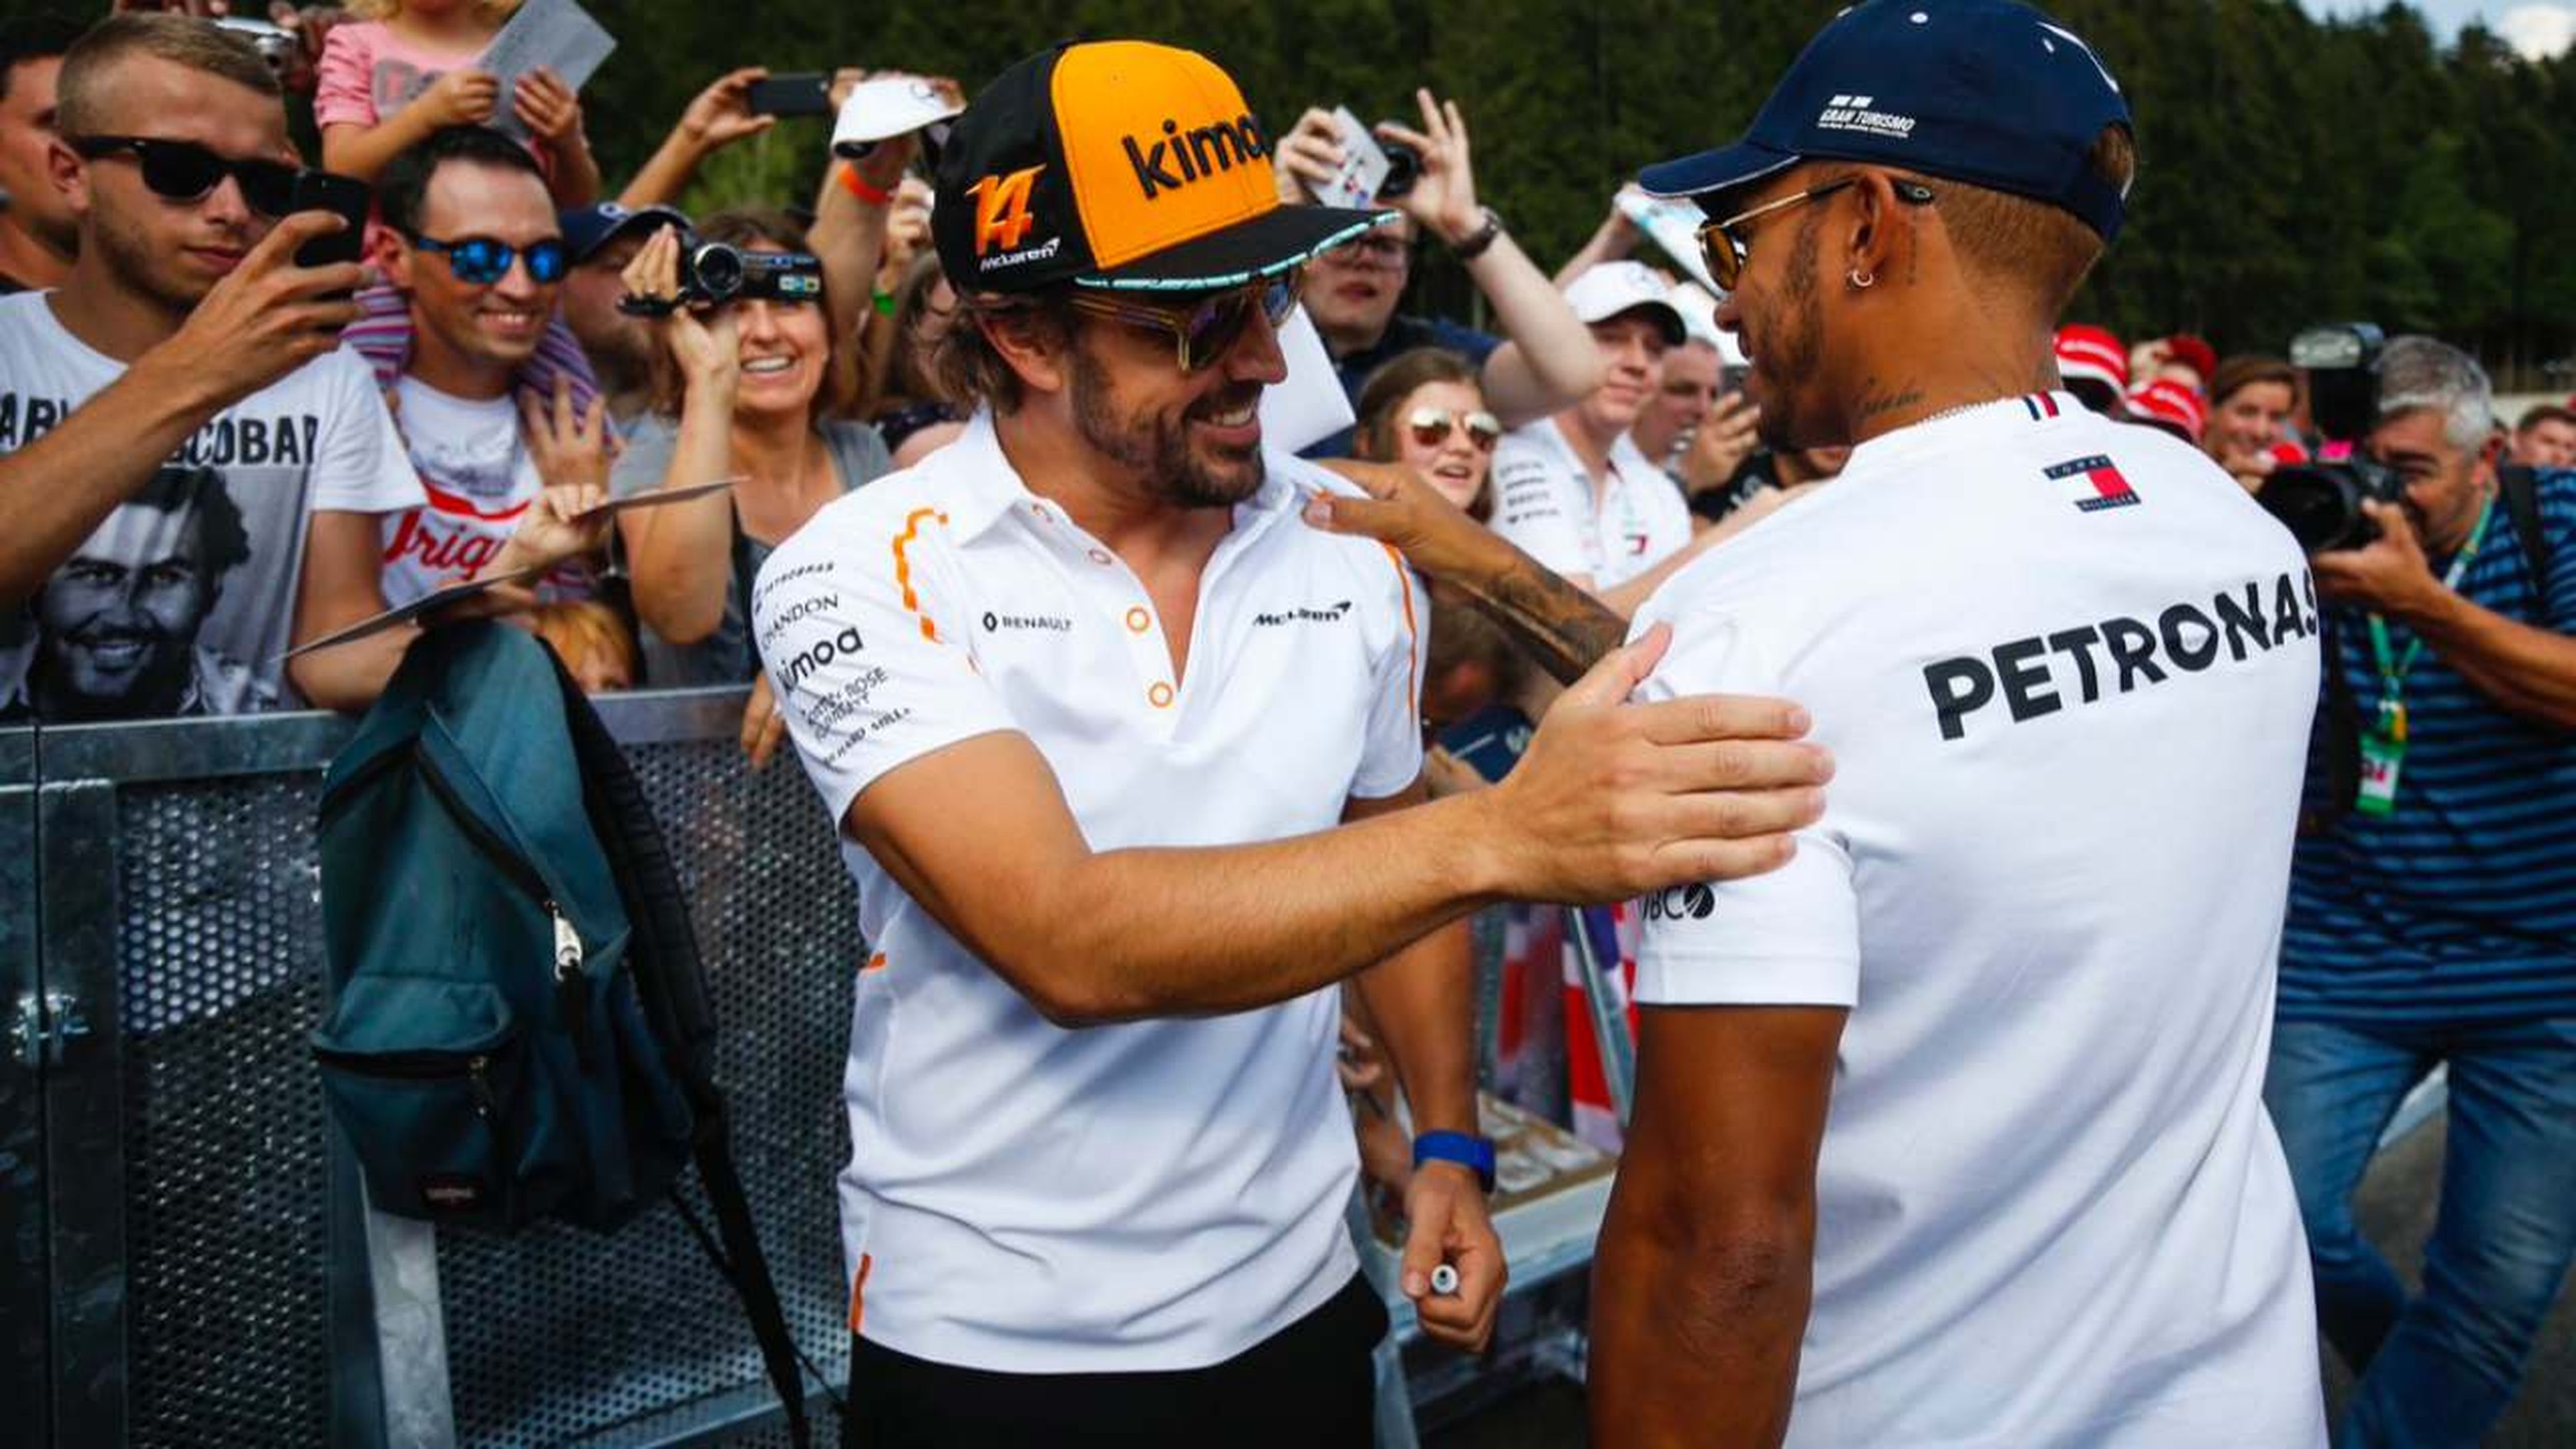 Fernando Alonso y Lewis Hamilton